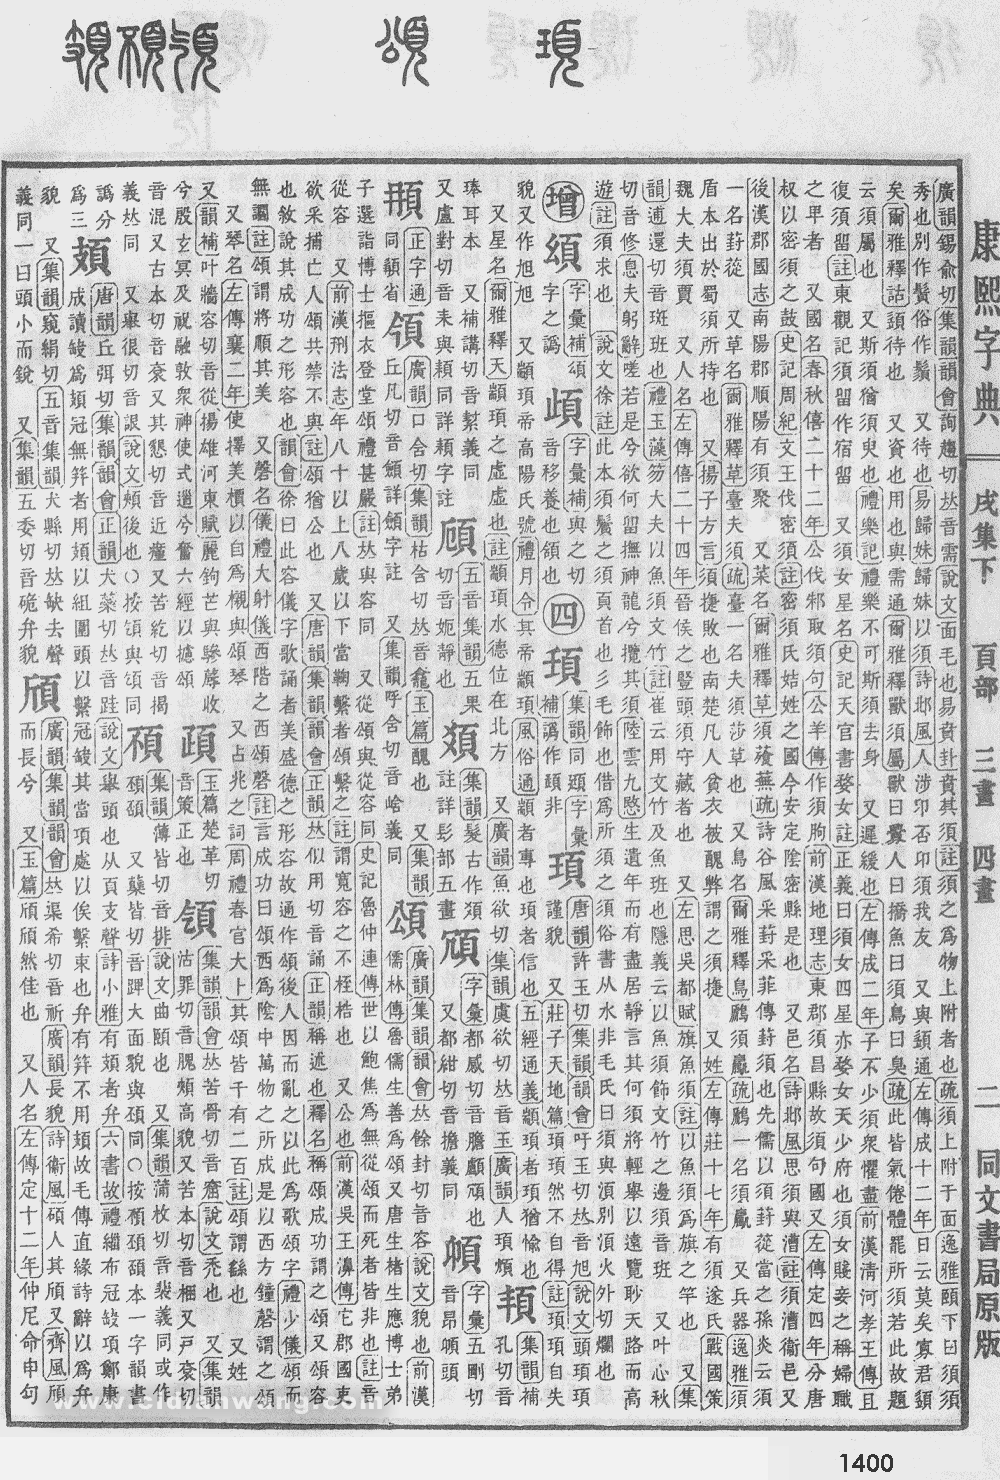 康熙字典掃描版第1400頁